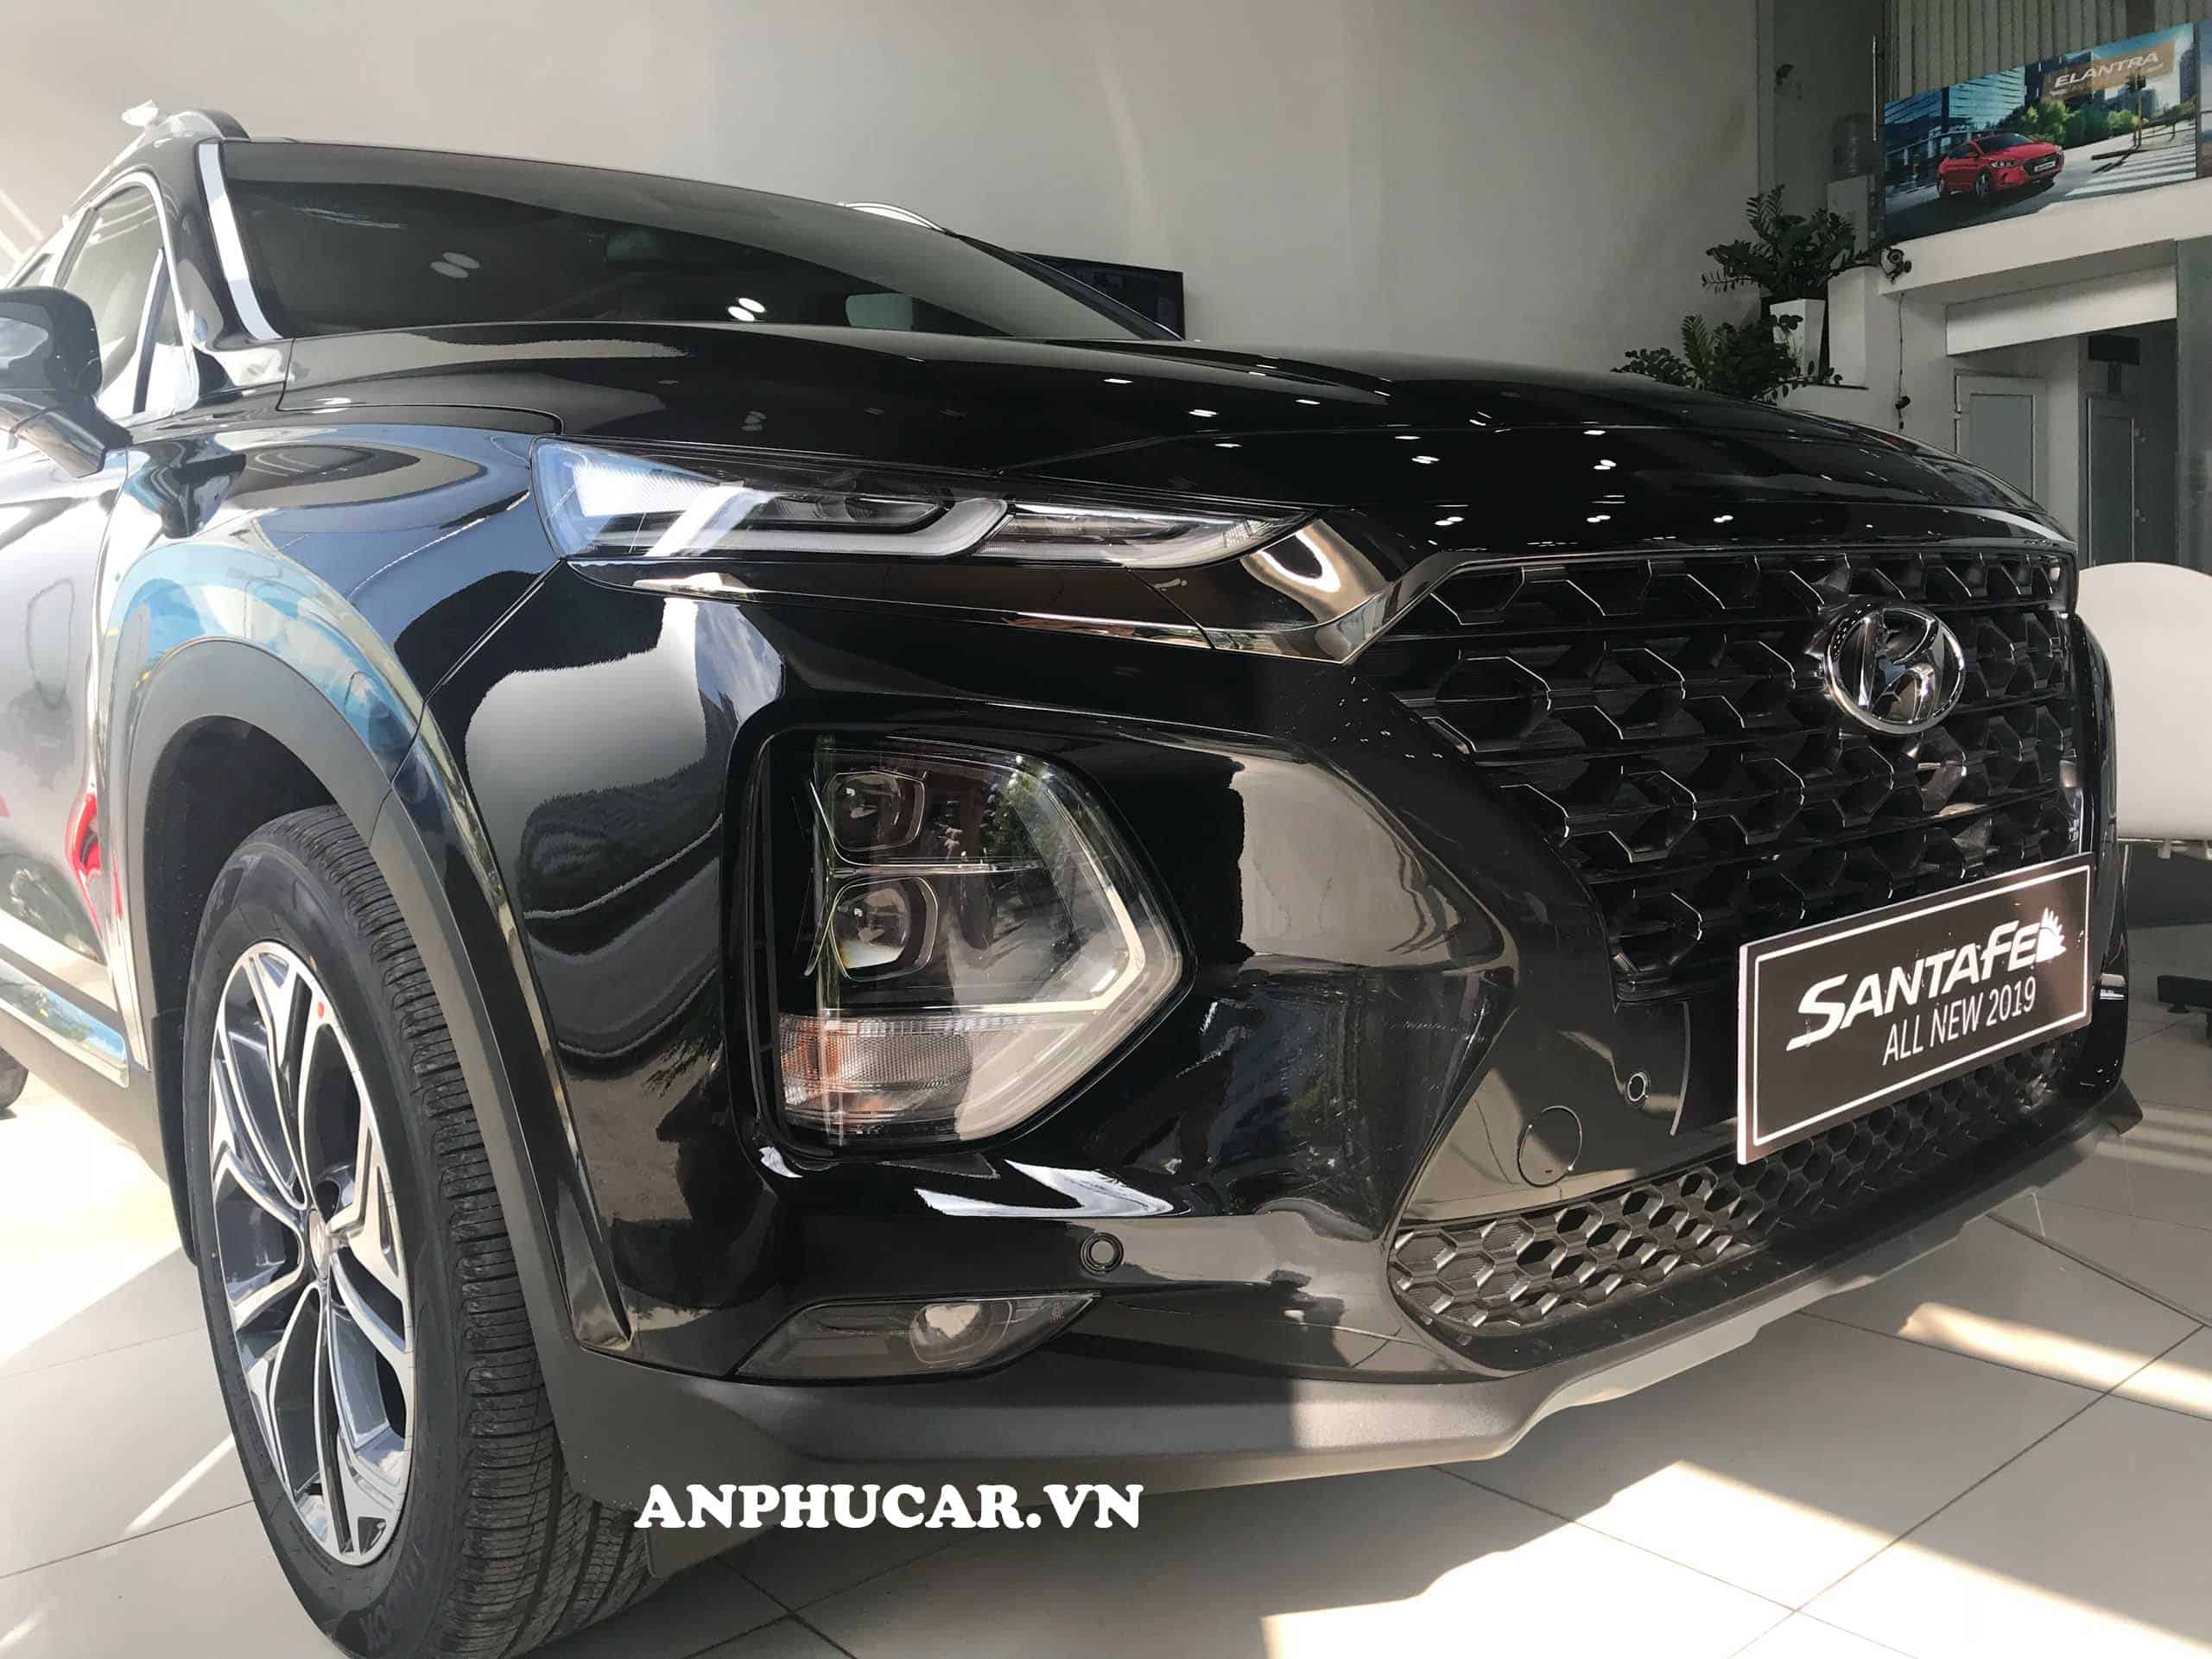 Ngoại thất Hyundai Santafe 2019